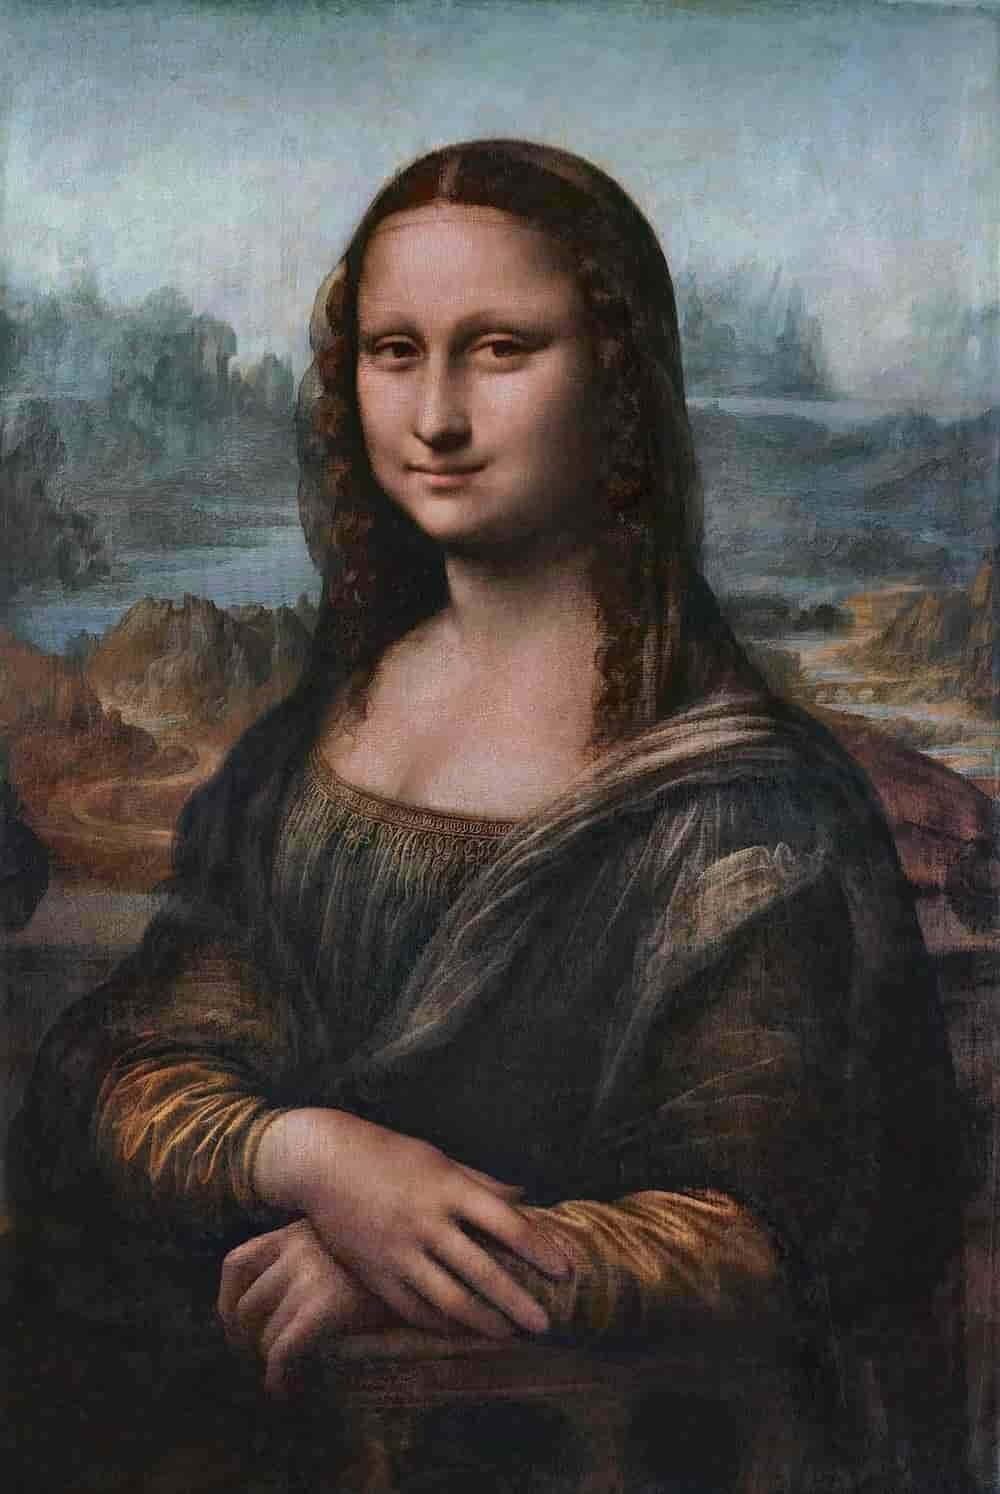 Mona Lisa or La Gioconda (in Italian) | Artist: Leonardo da Vinci | Where to see it: Louvre Museum (Paris)